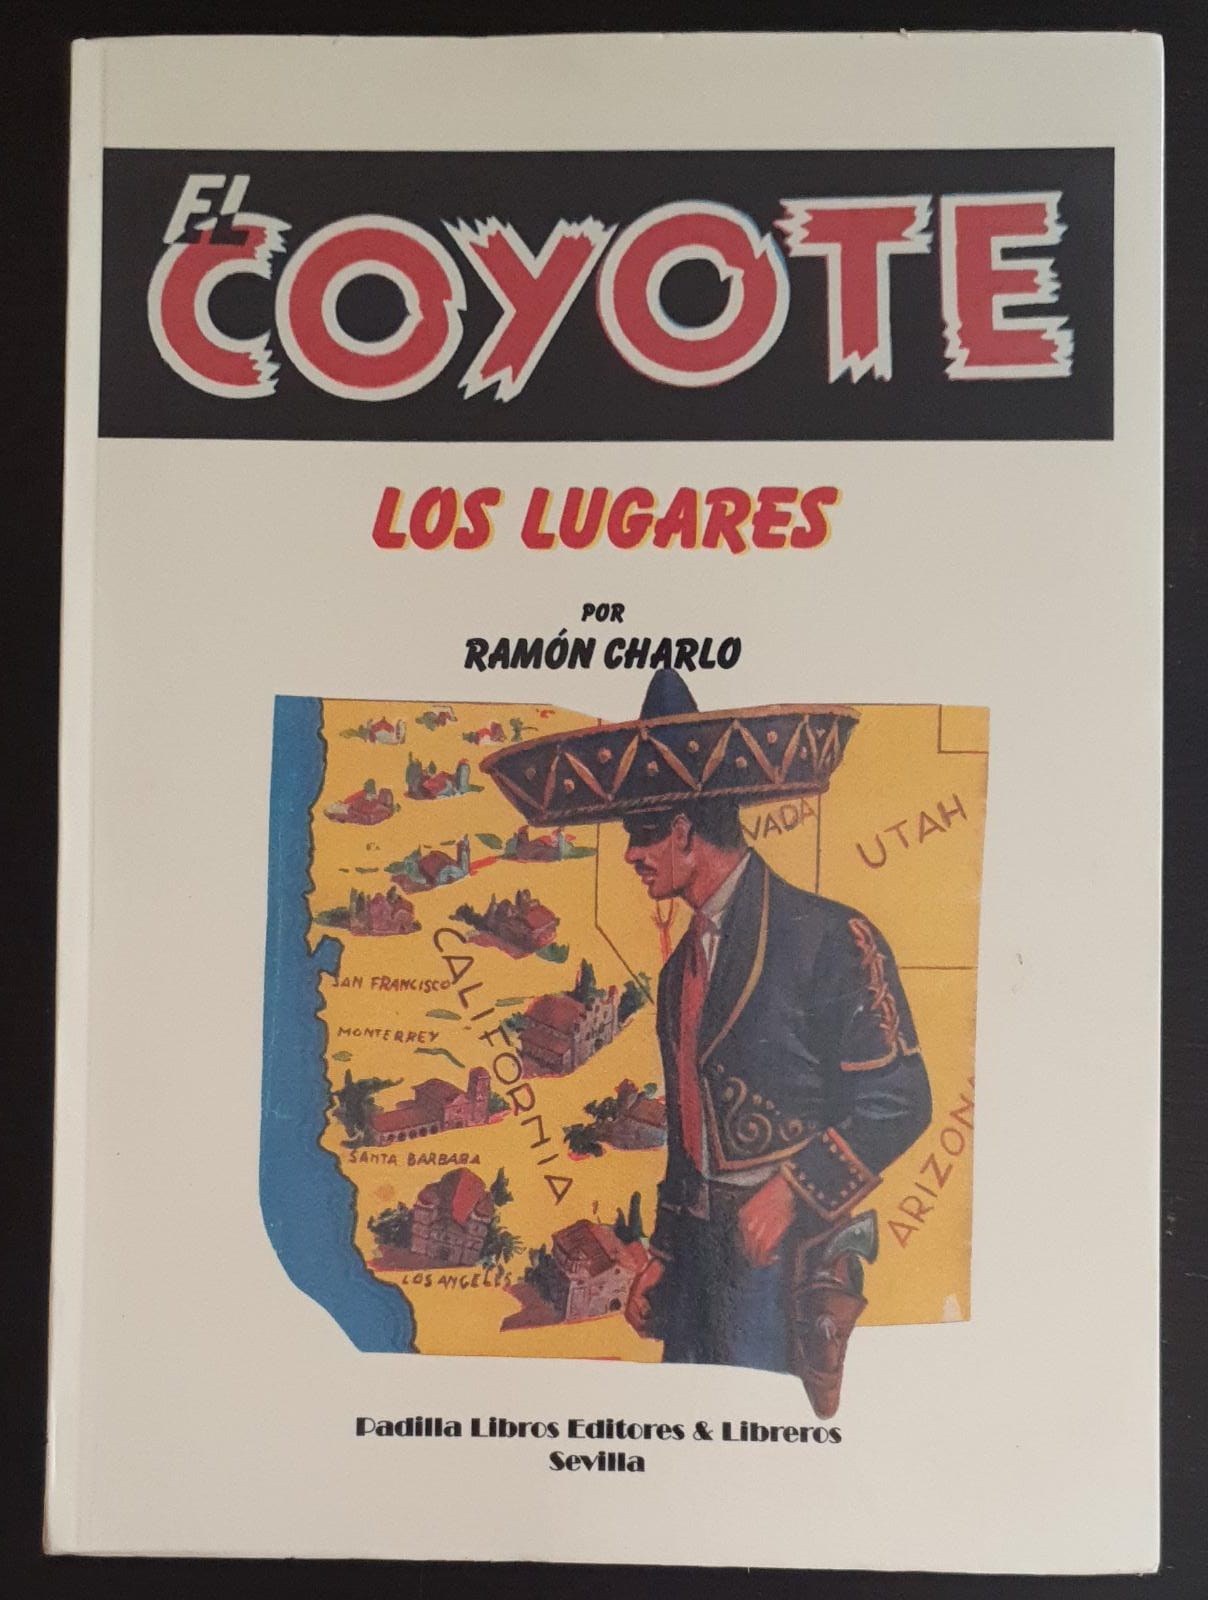 El Coyote. Los Lugares. Ramón Charlo. Padilla Libros Editores & Libreros SIN USAR